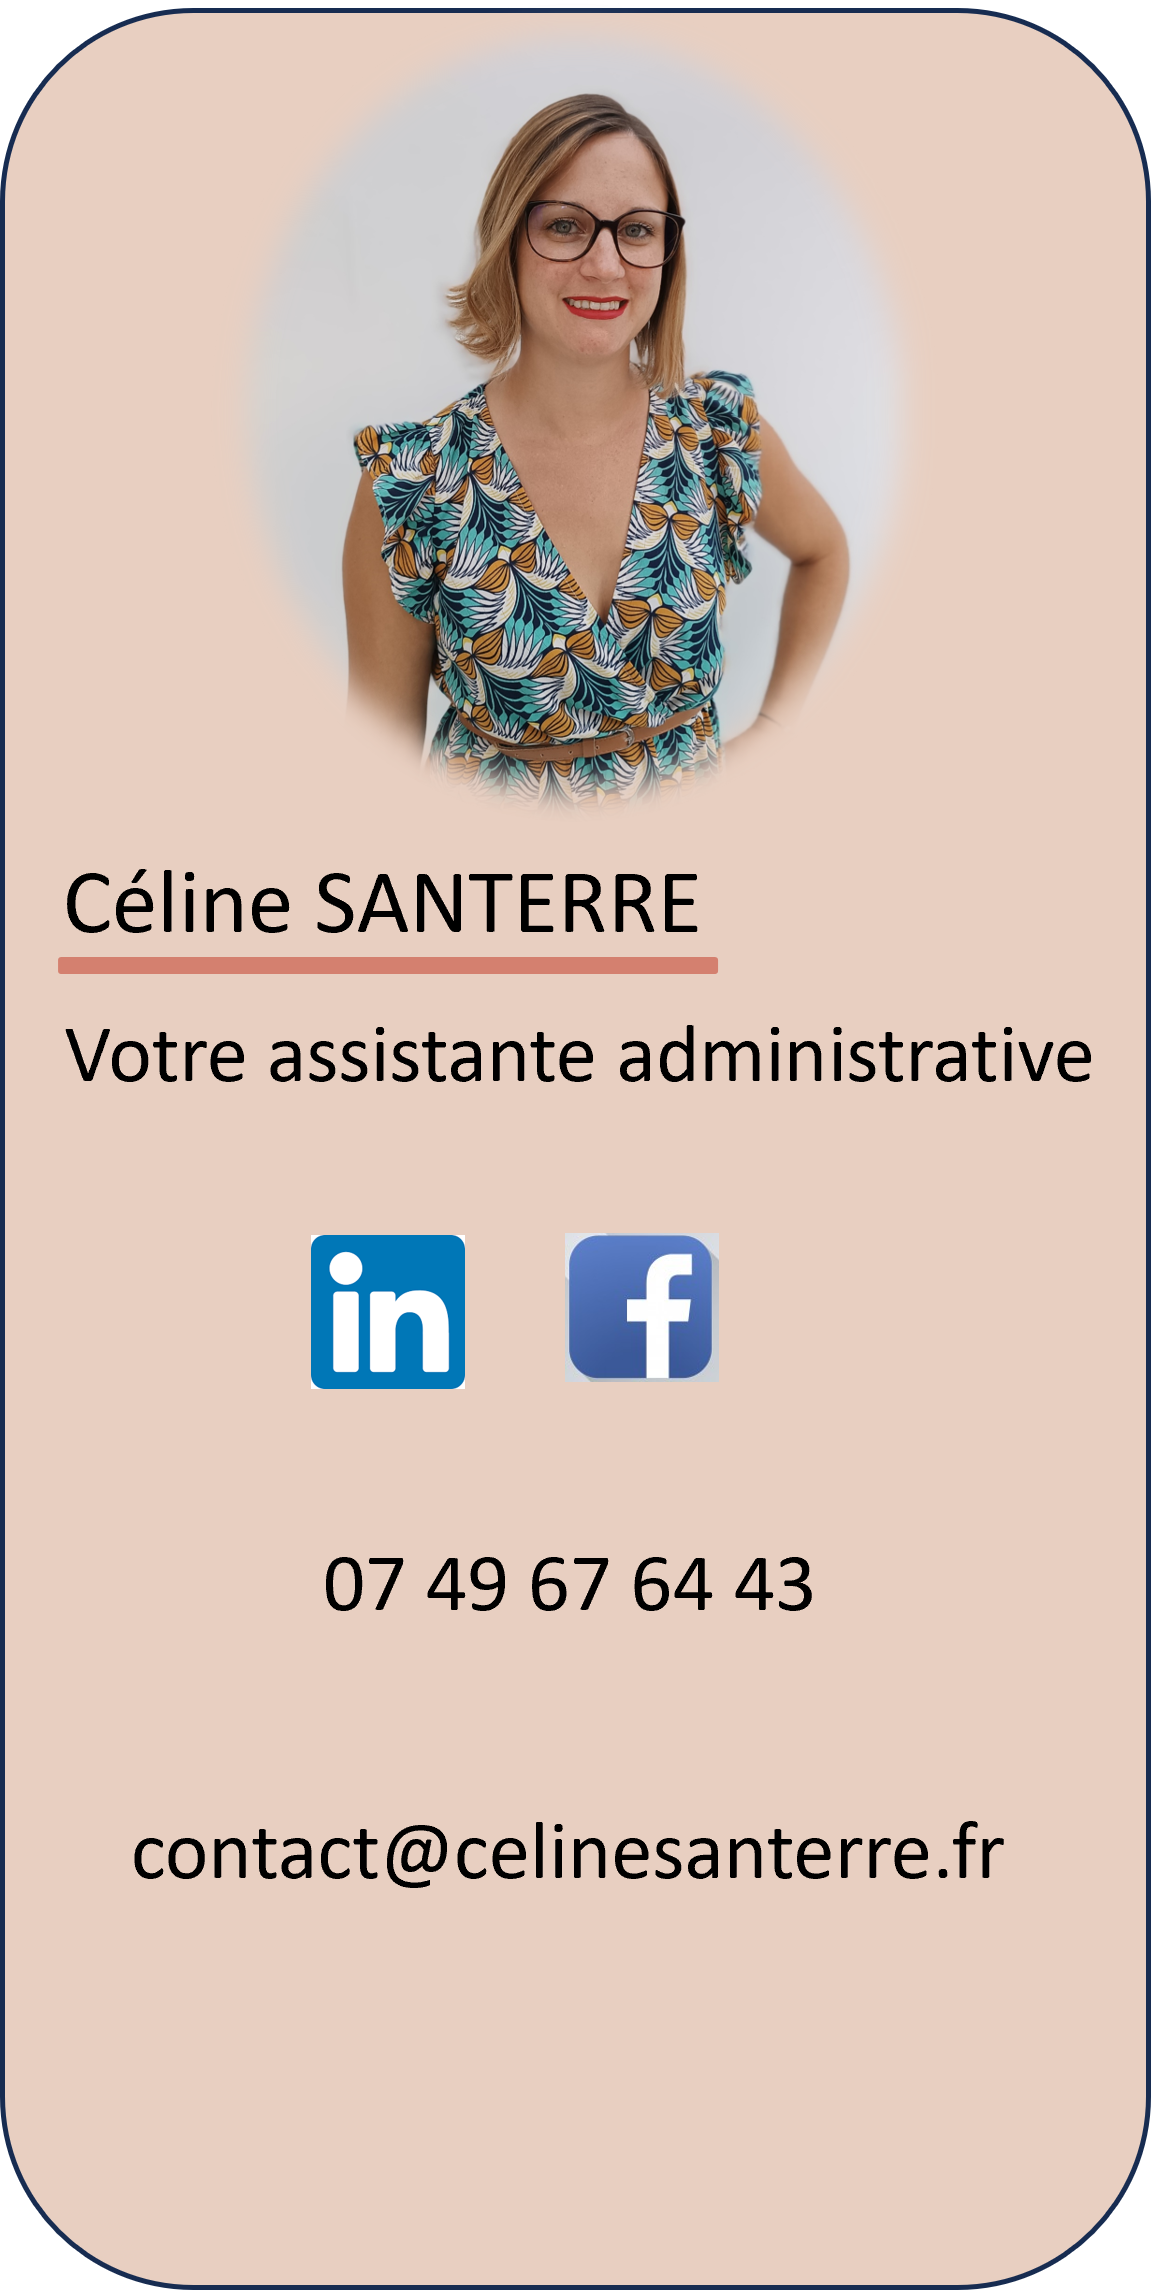 Contactez Céline Santerre, votre assistance administrative par téléphone au 07 49 67 64 43 ou par email à contact@celinesanterre.fr